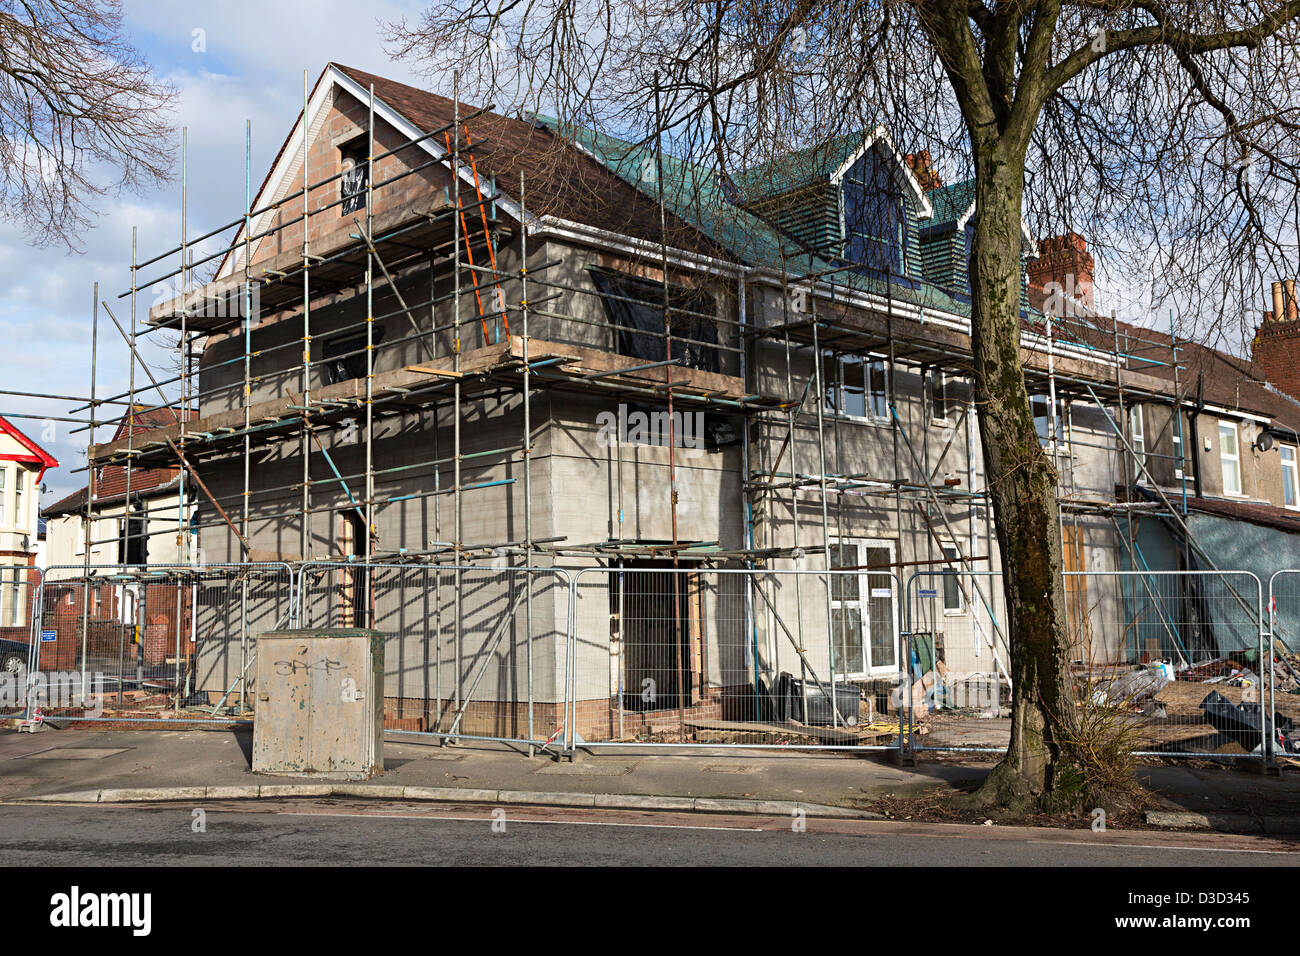 Maison en banlieue d'échafaudages en raison d'une importante extension en cours de construction, Cardiff, Pays de Galles, Royaume-Uni Banque D'Images